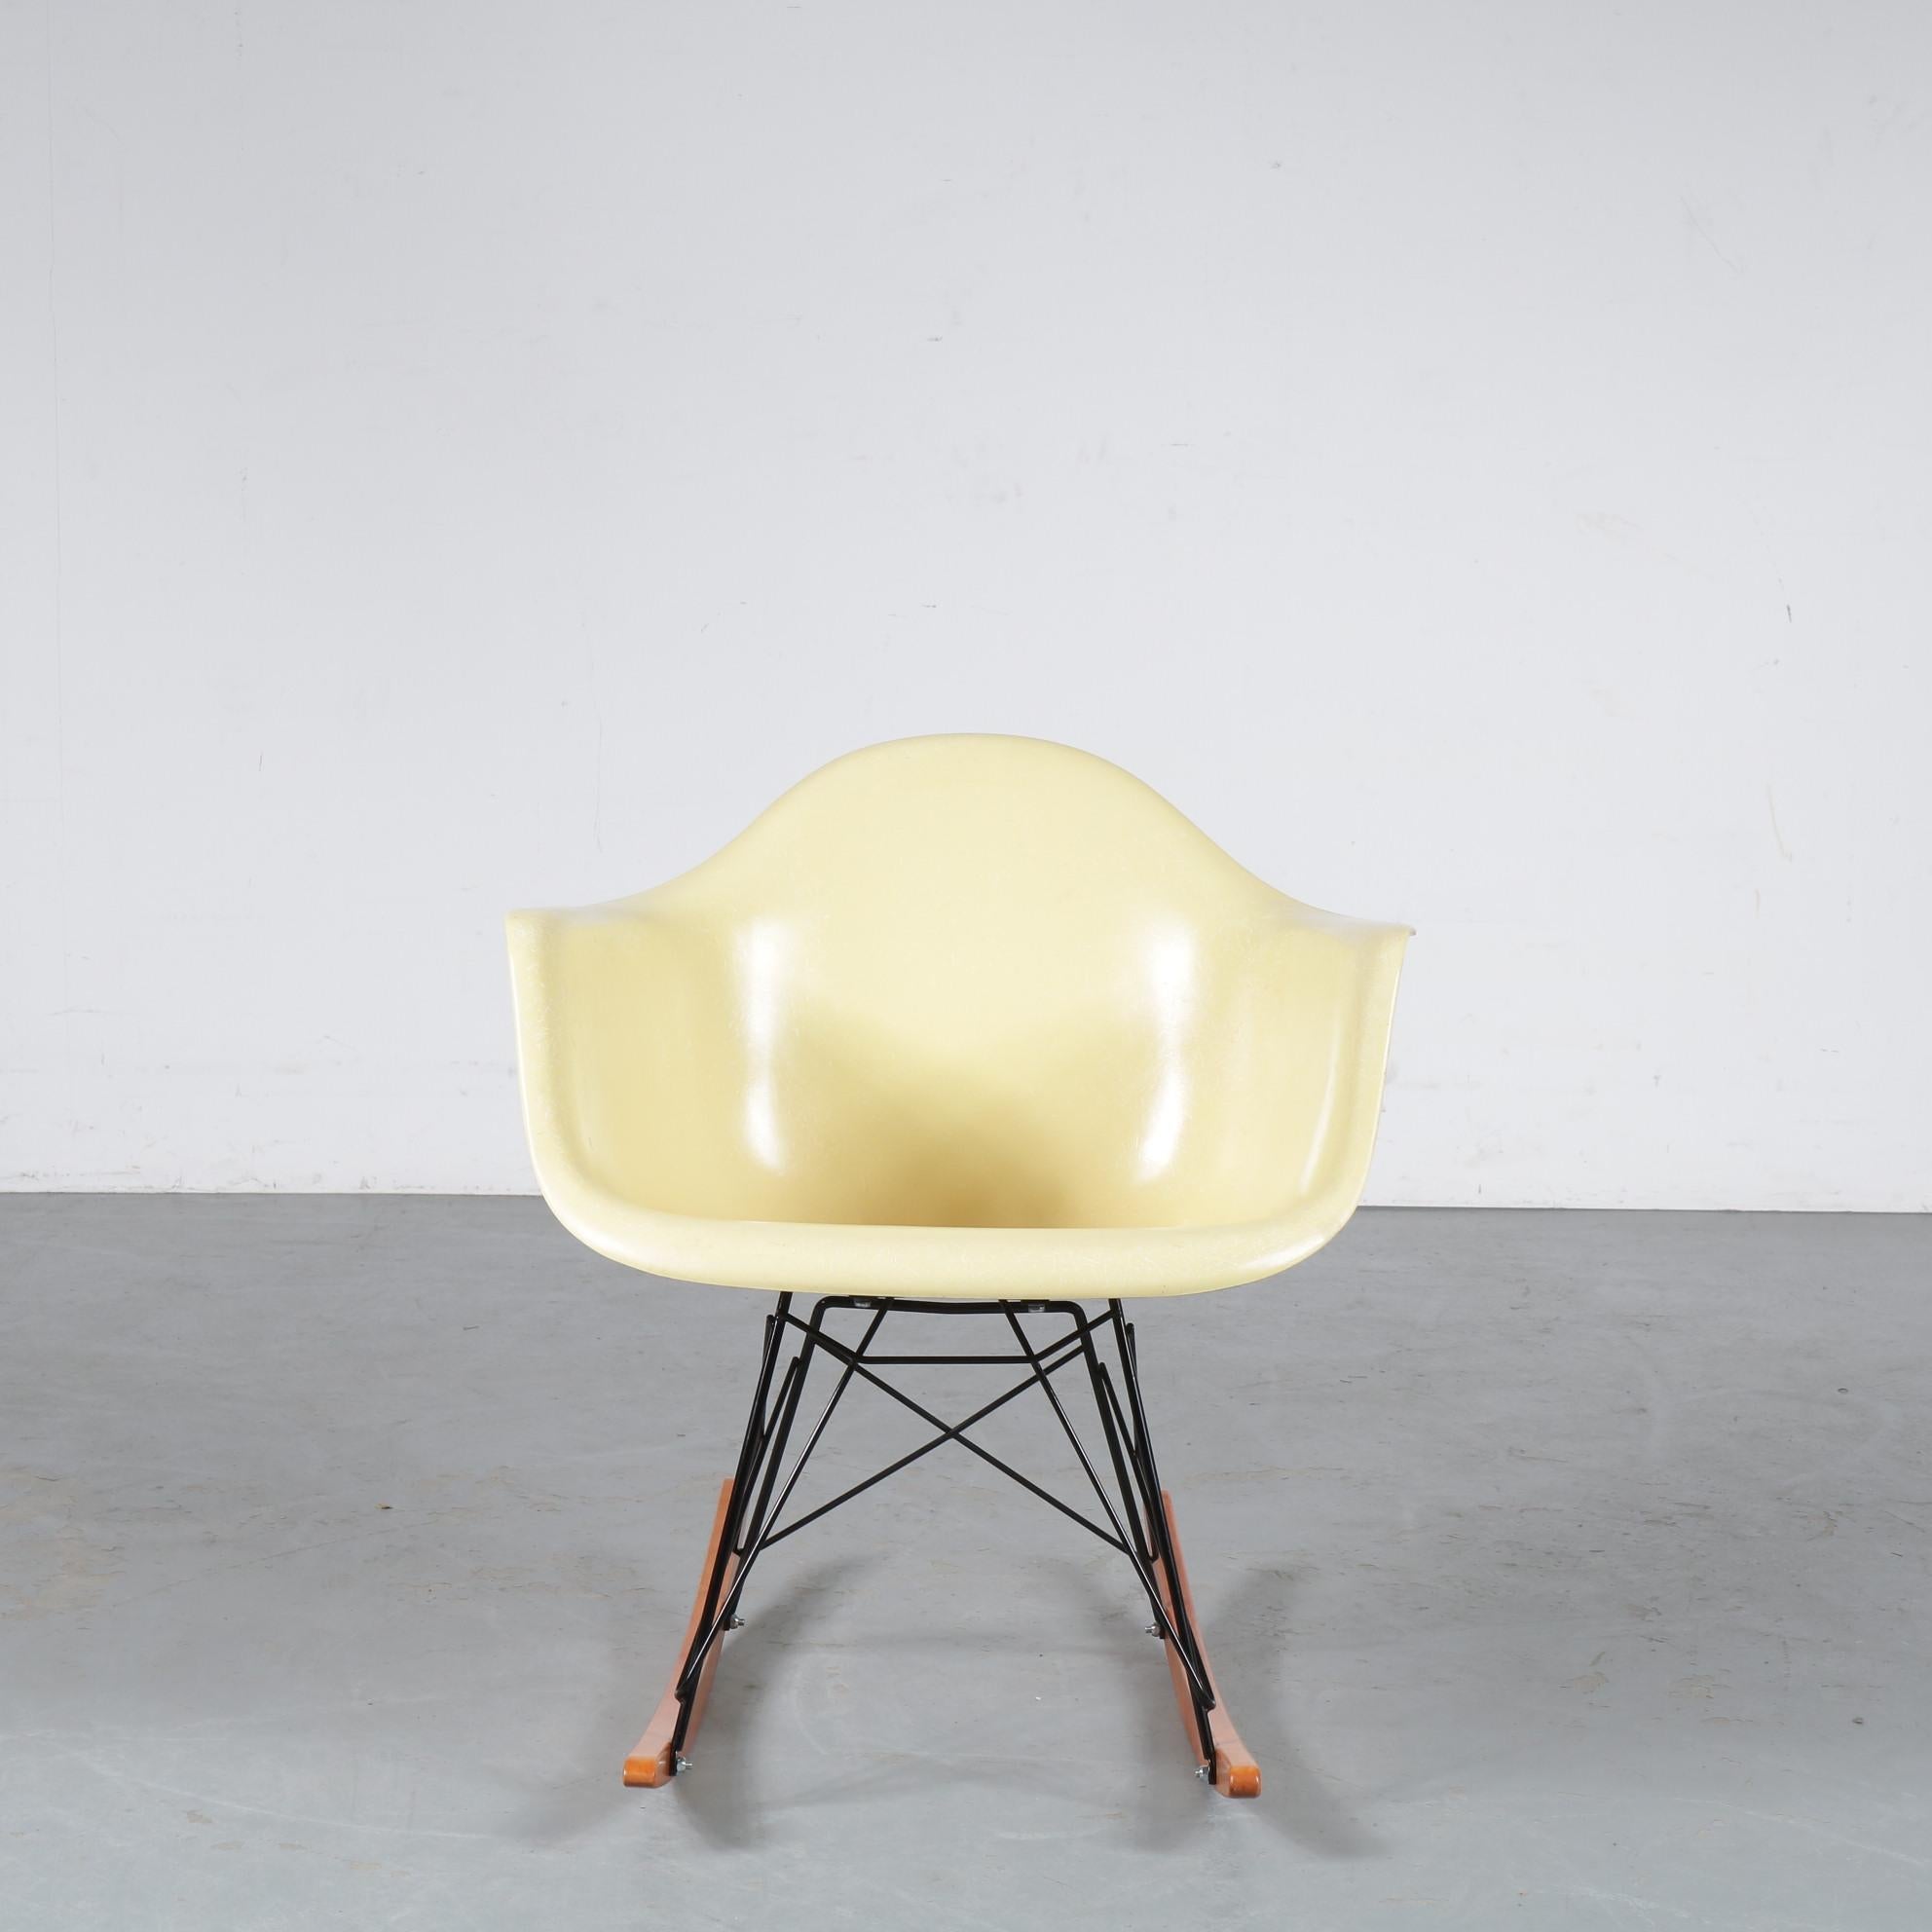 Ein sehr seltener Schaukelstuhl, entworfen von Charles & Ray Eames, hergestellt von Zenith / Herman Miller in den Vereinigten Staaten von Amerika um 1950.

Die ersten Eames-Stühle aus Fiberglas wurden von Zenith Plastics hergestellt und waren in